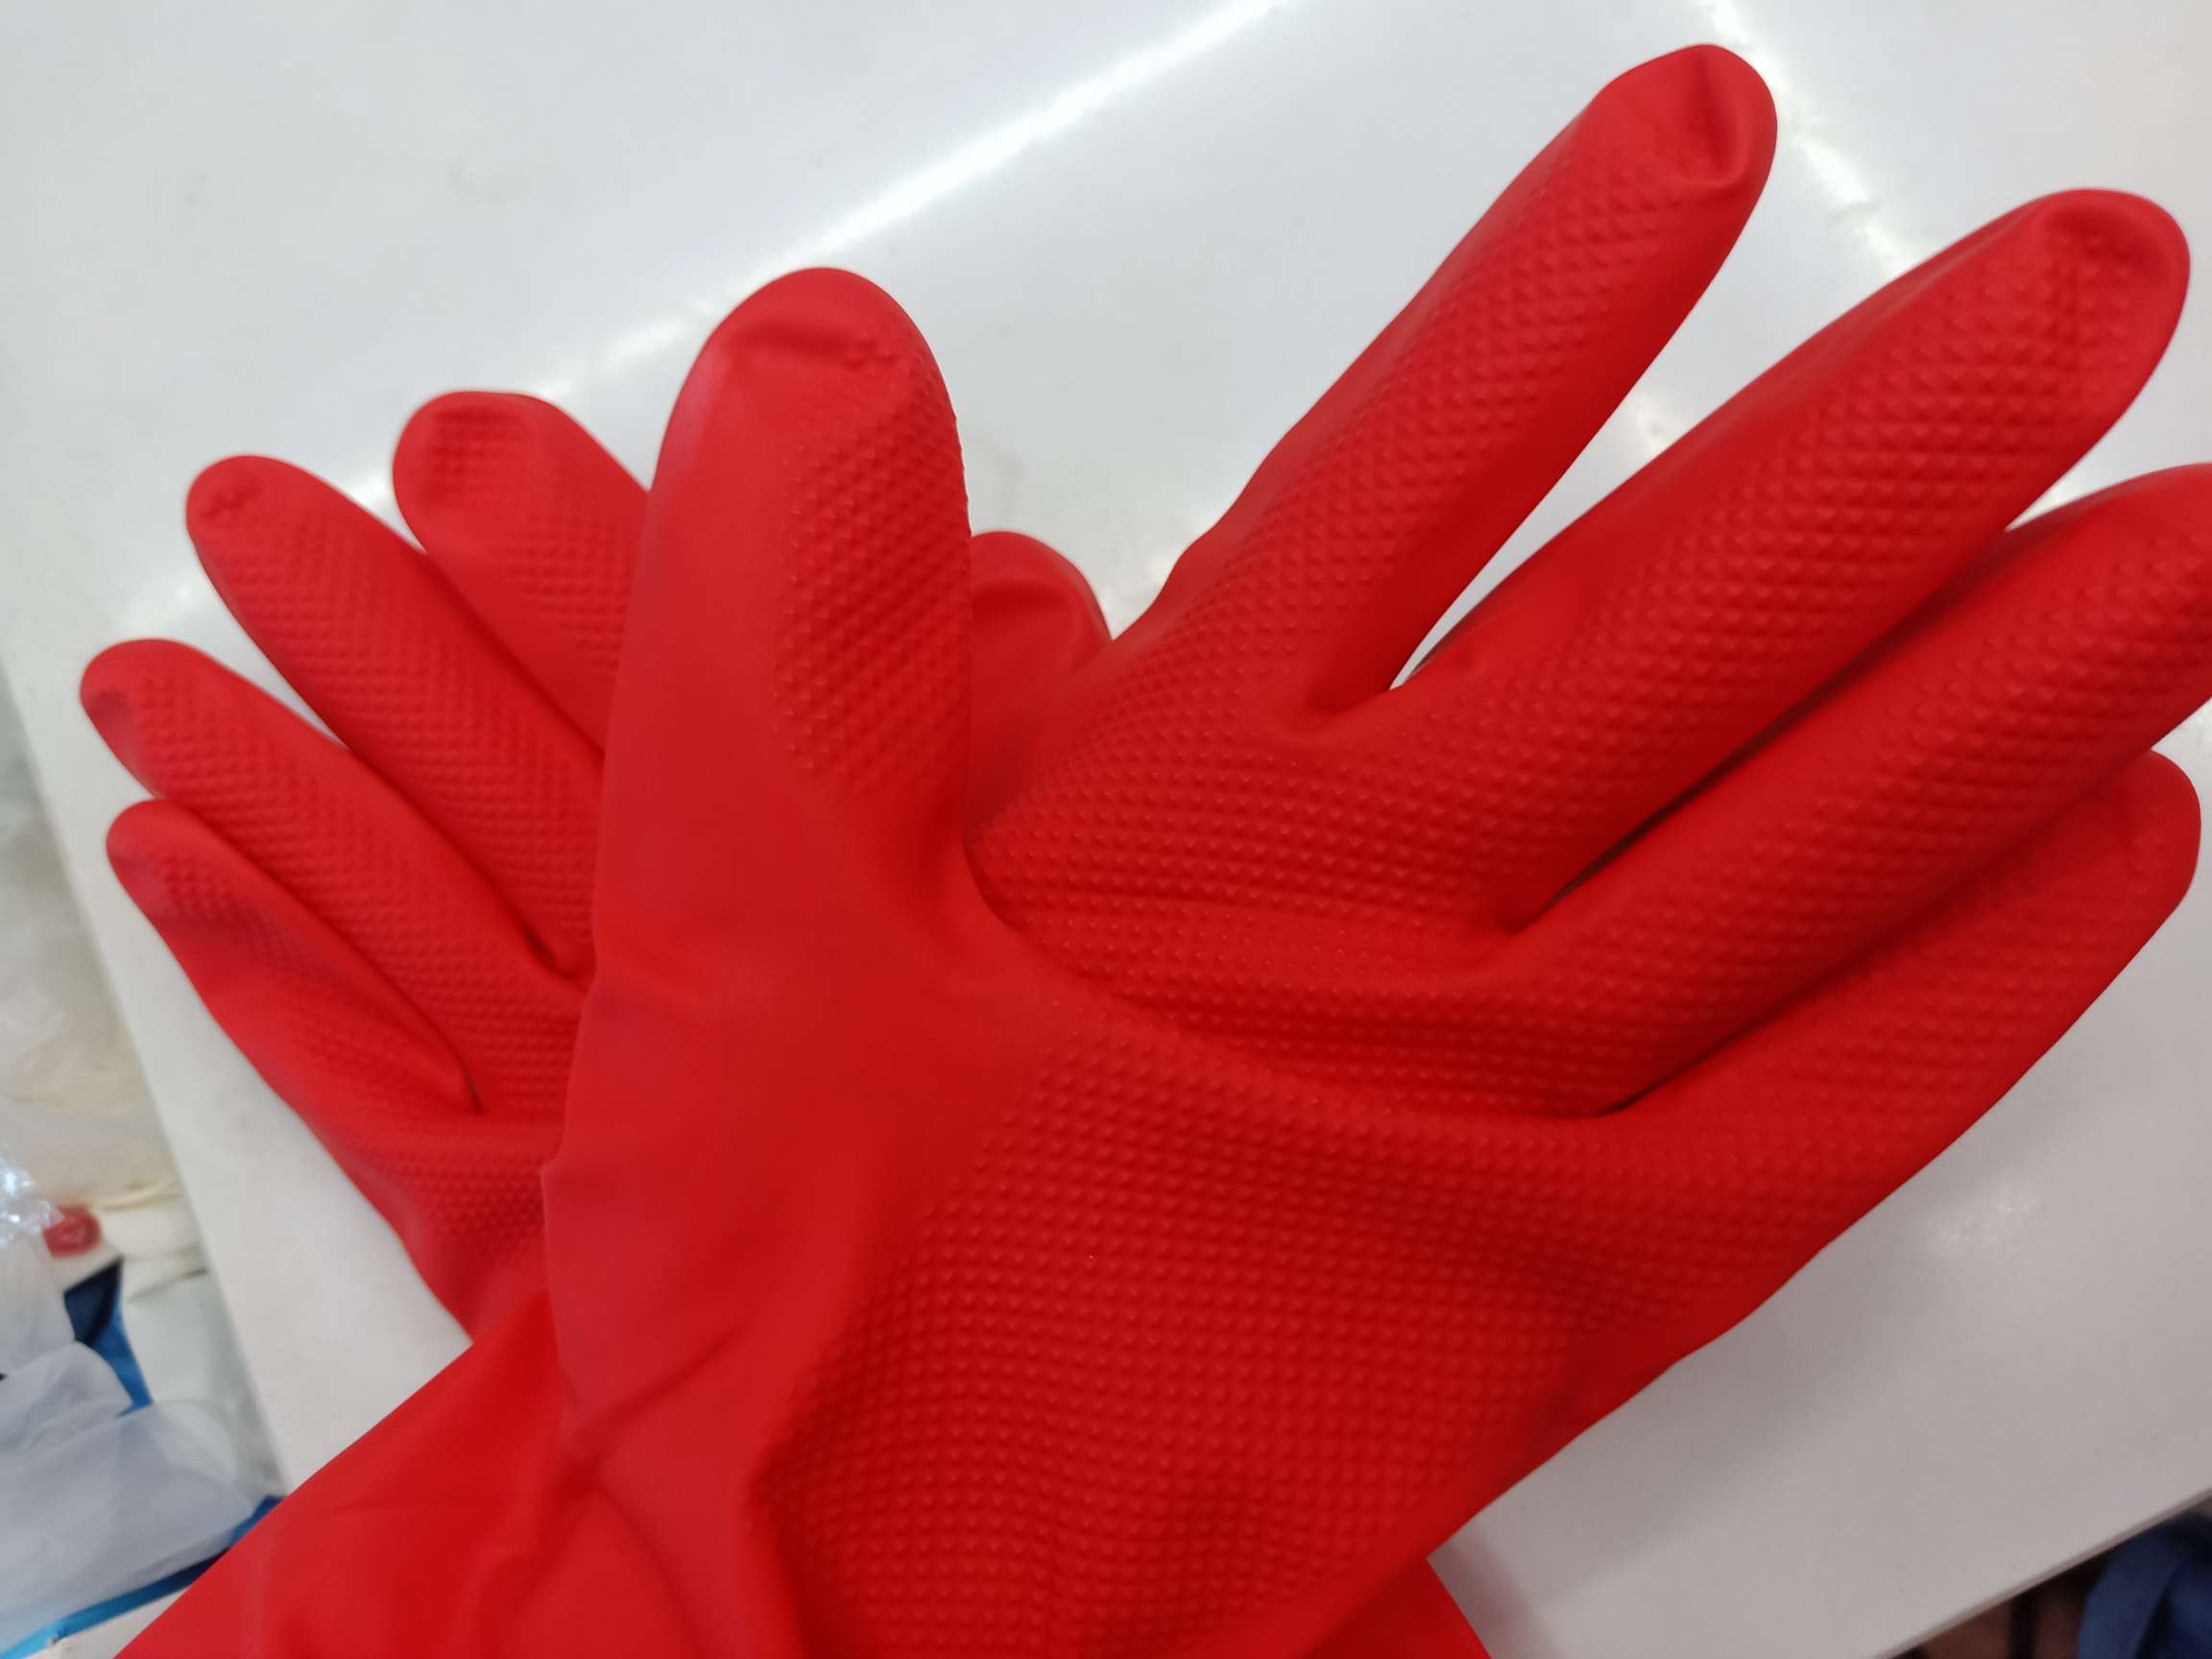 红色40g乳胶手套